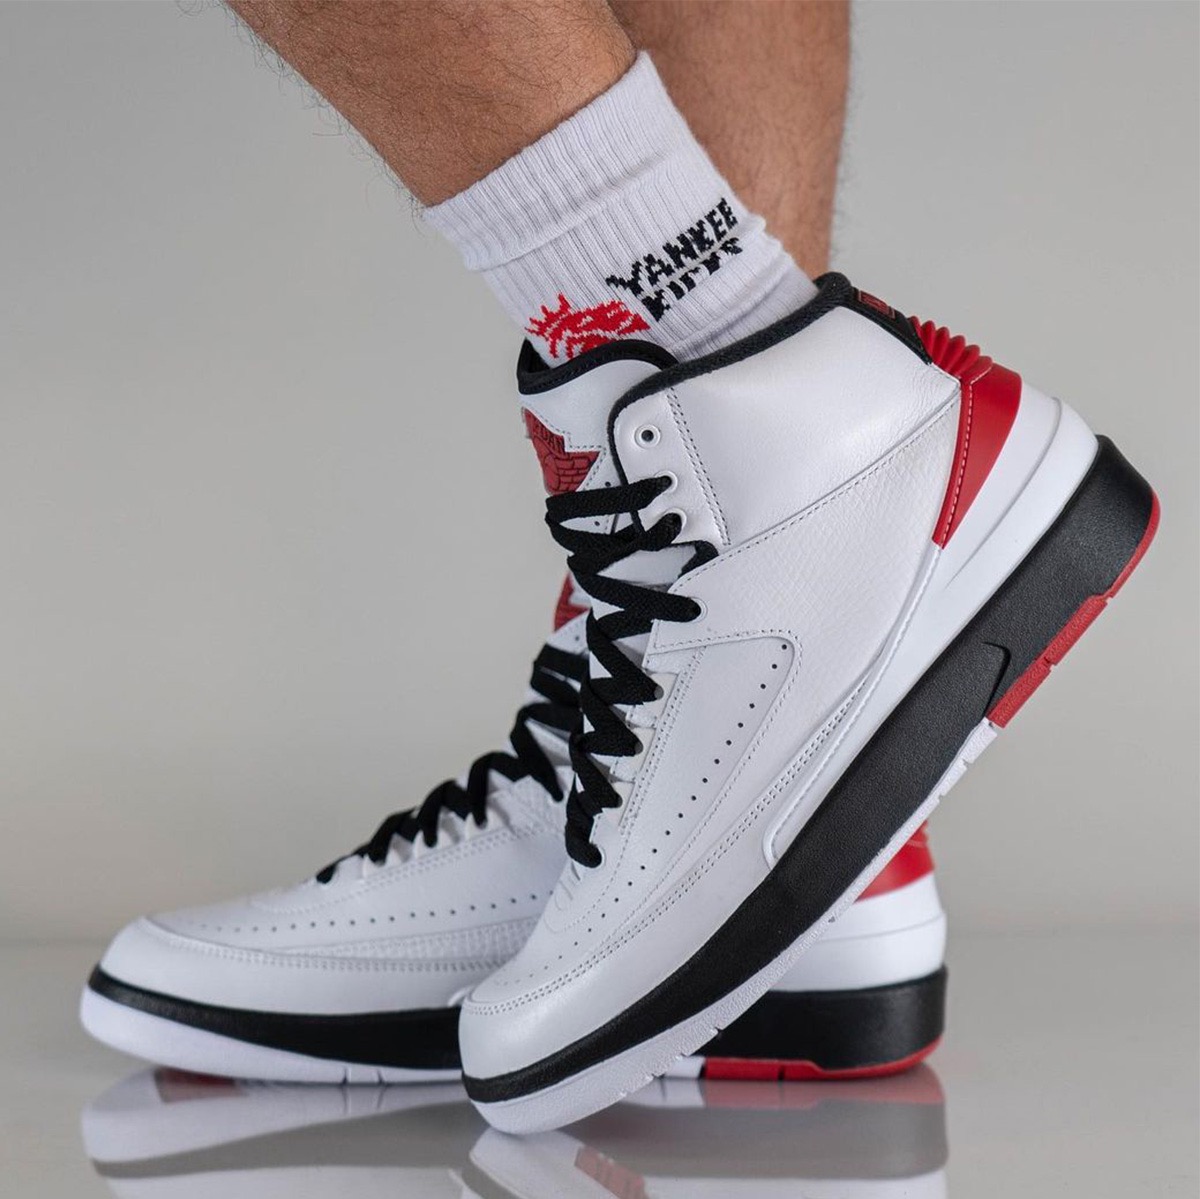 Nike Air Jordan 2 Retro OG “Chicago”が国内年月日に